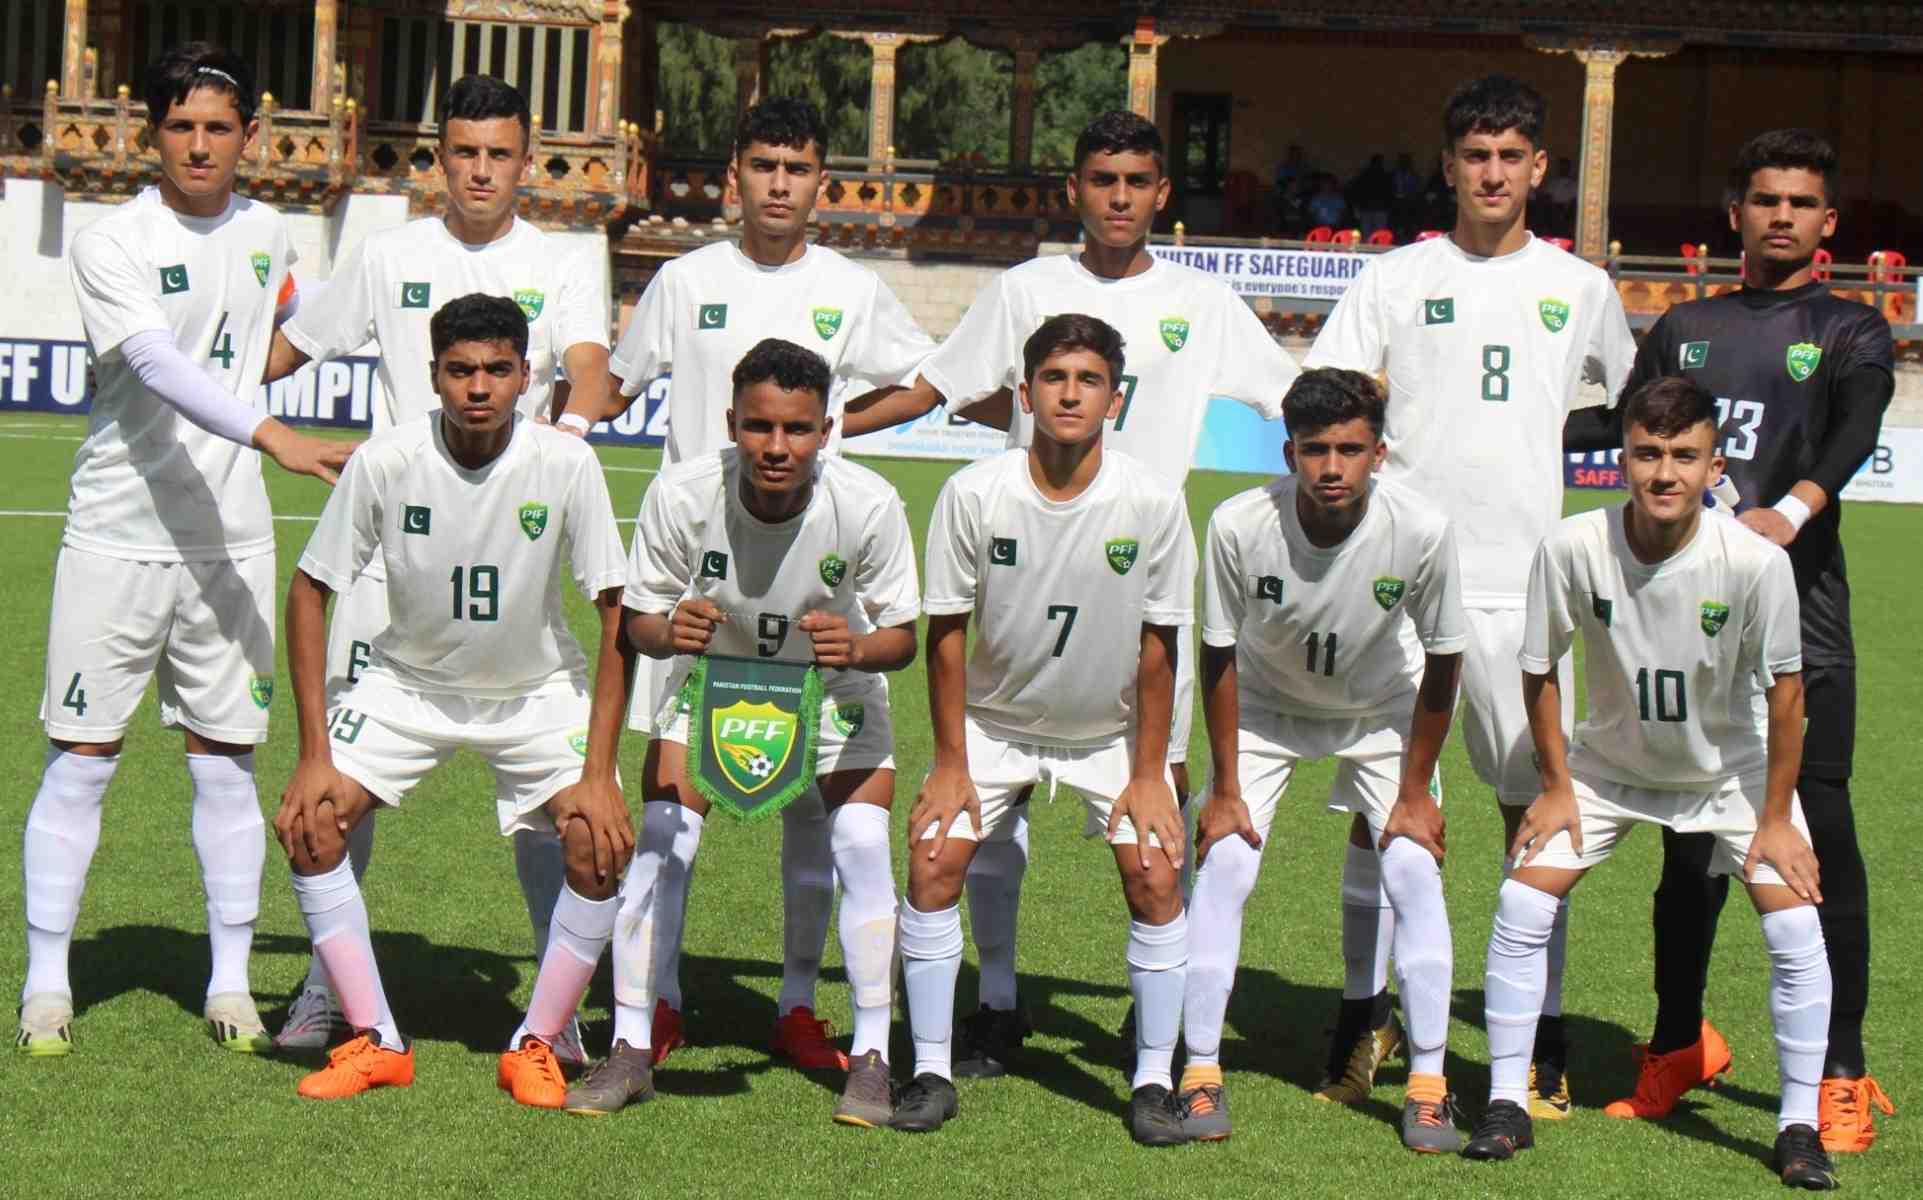 SAFF U16 Football Championship: Pakistan thrash Maldives 3-0